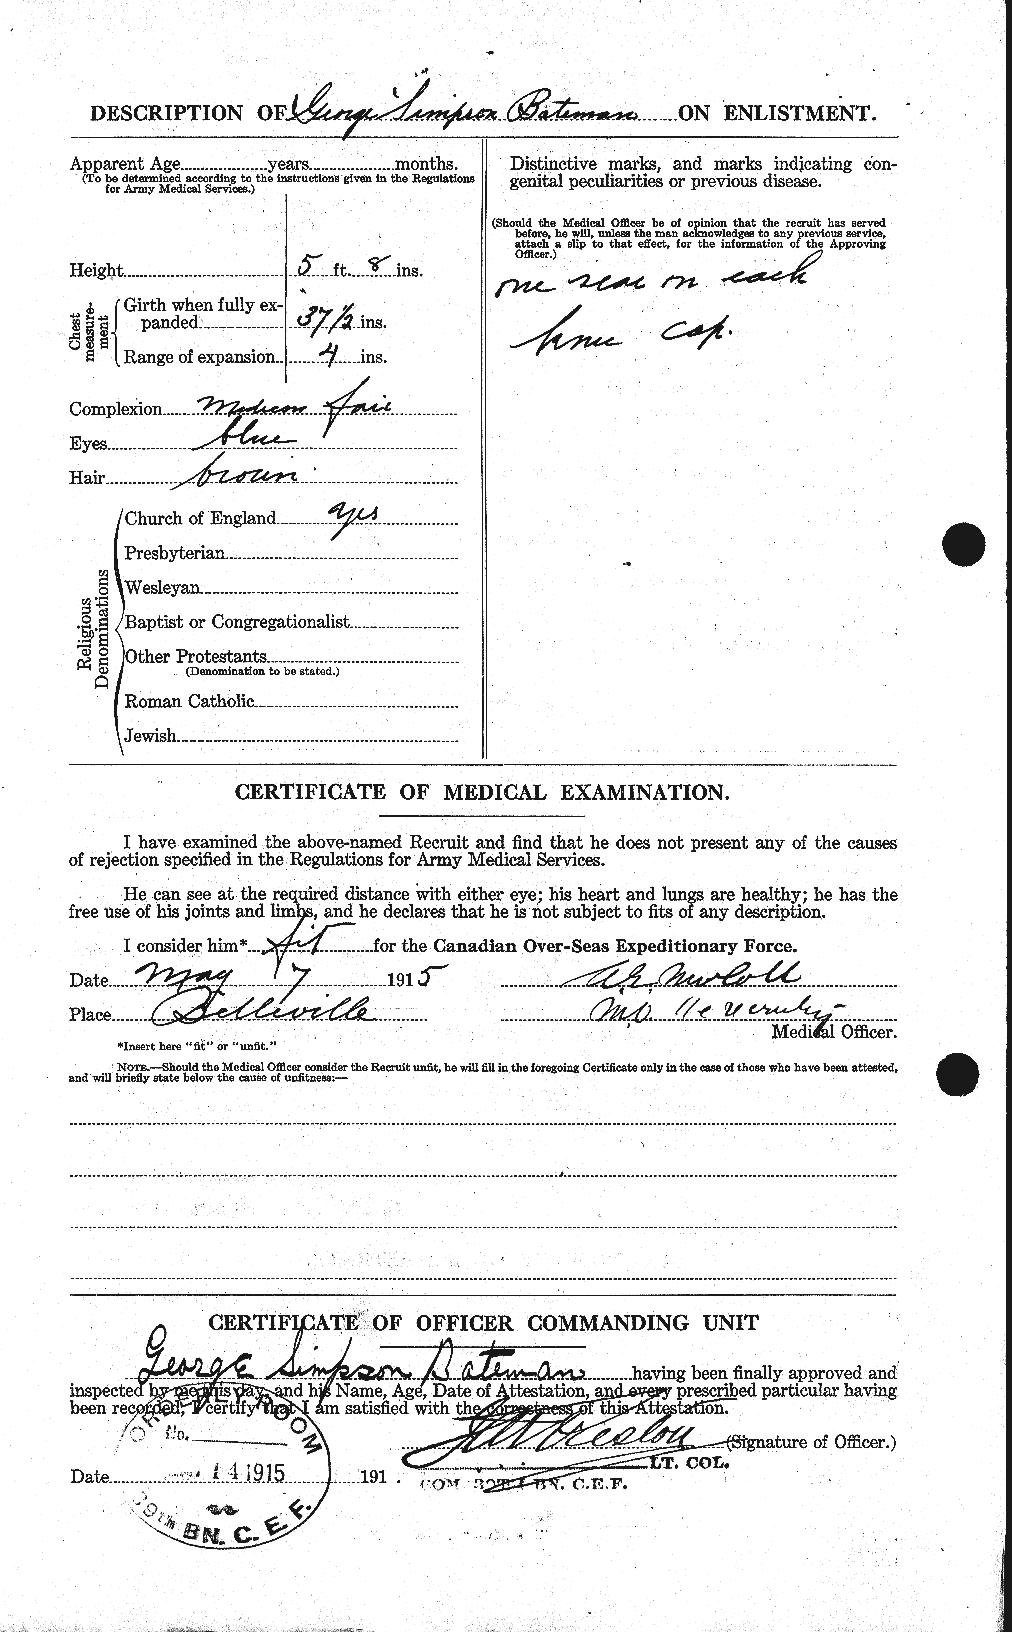 Dossiers du Personnel de la Première Guerre mondiale - CEC 228029b